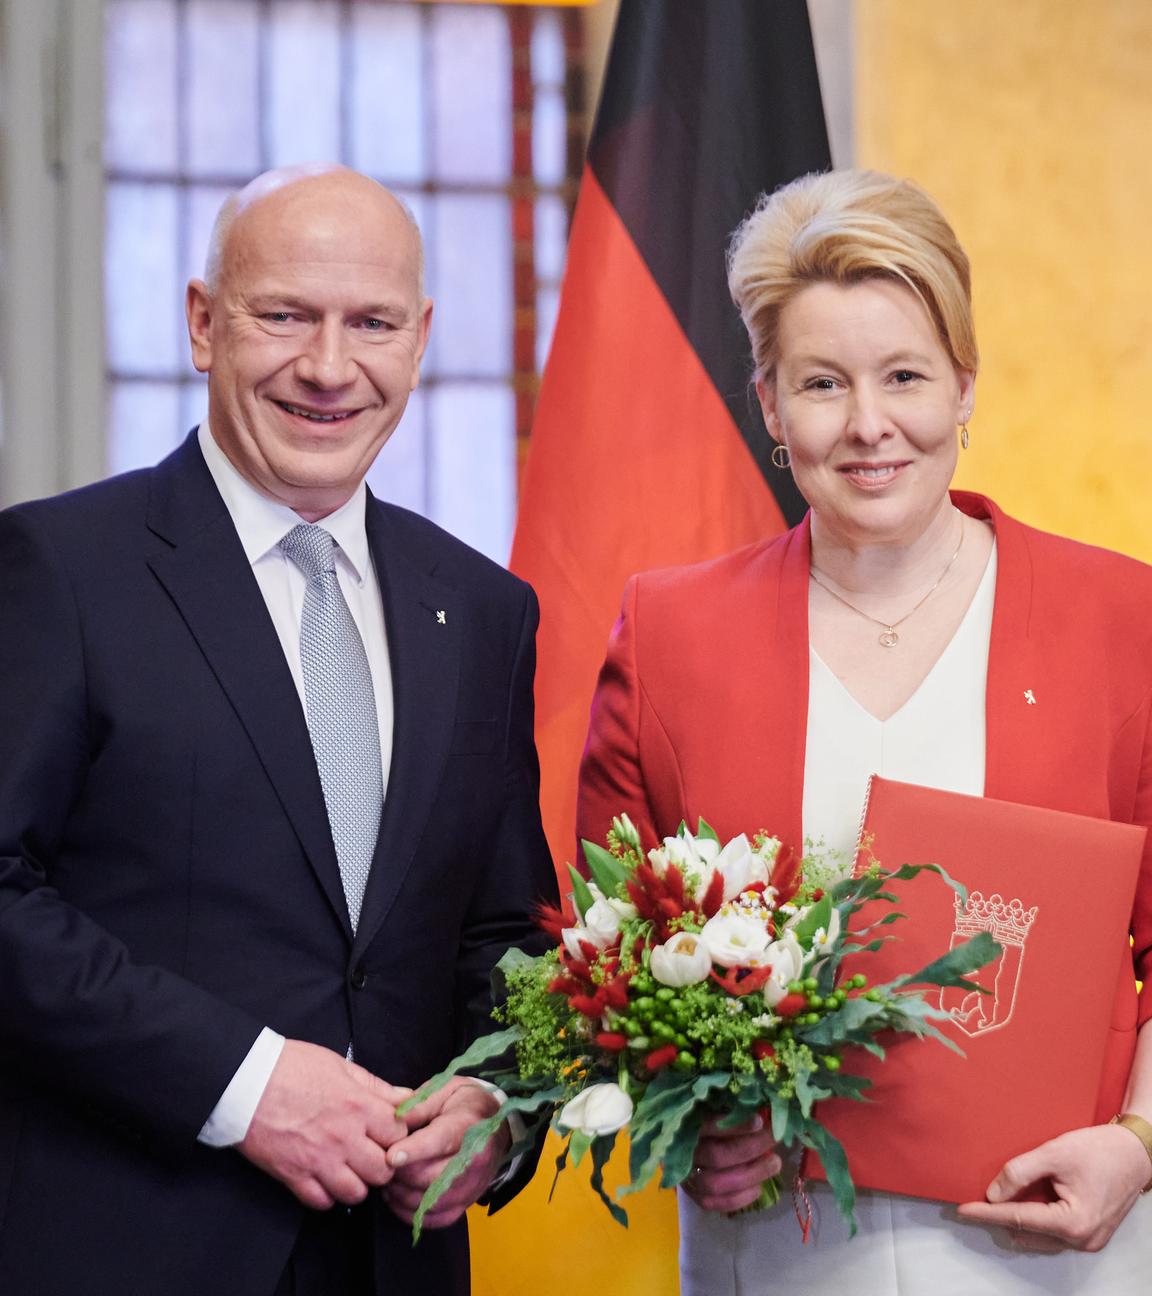 erlin: Kai Wegner (CDU), Regierender Bürgermeister von Berlin, ernennt Franziska Giffey (SPD) zur Senatorin für Wirtschaft, Energie und Betriebe. Im Roten Rathaus findet heute der Regierungswechsel statt